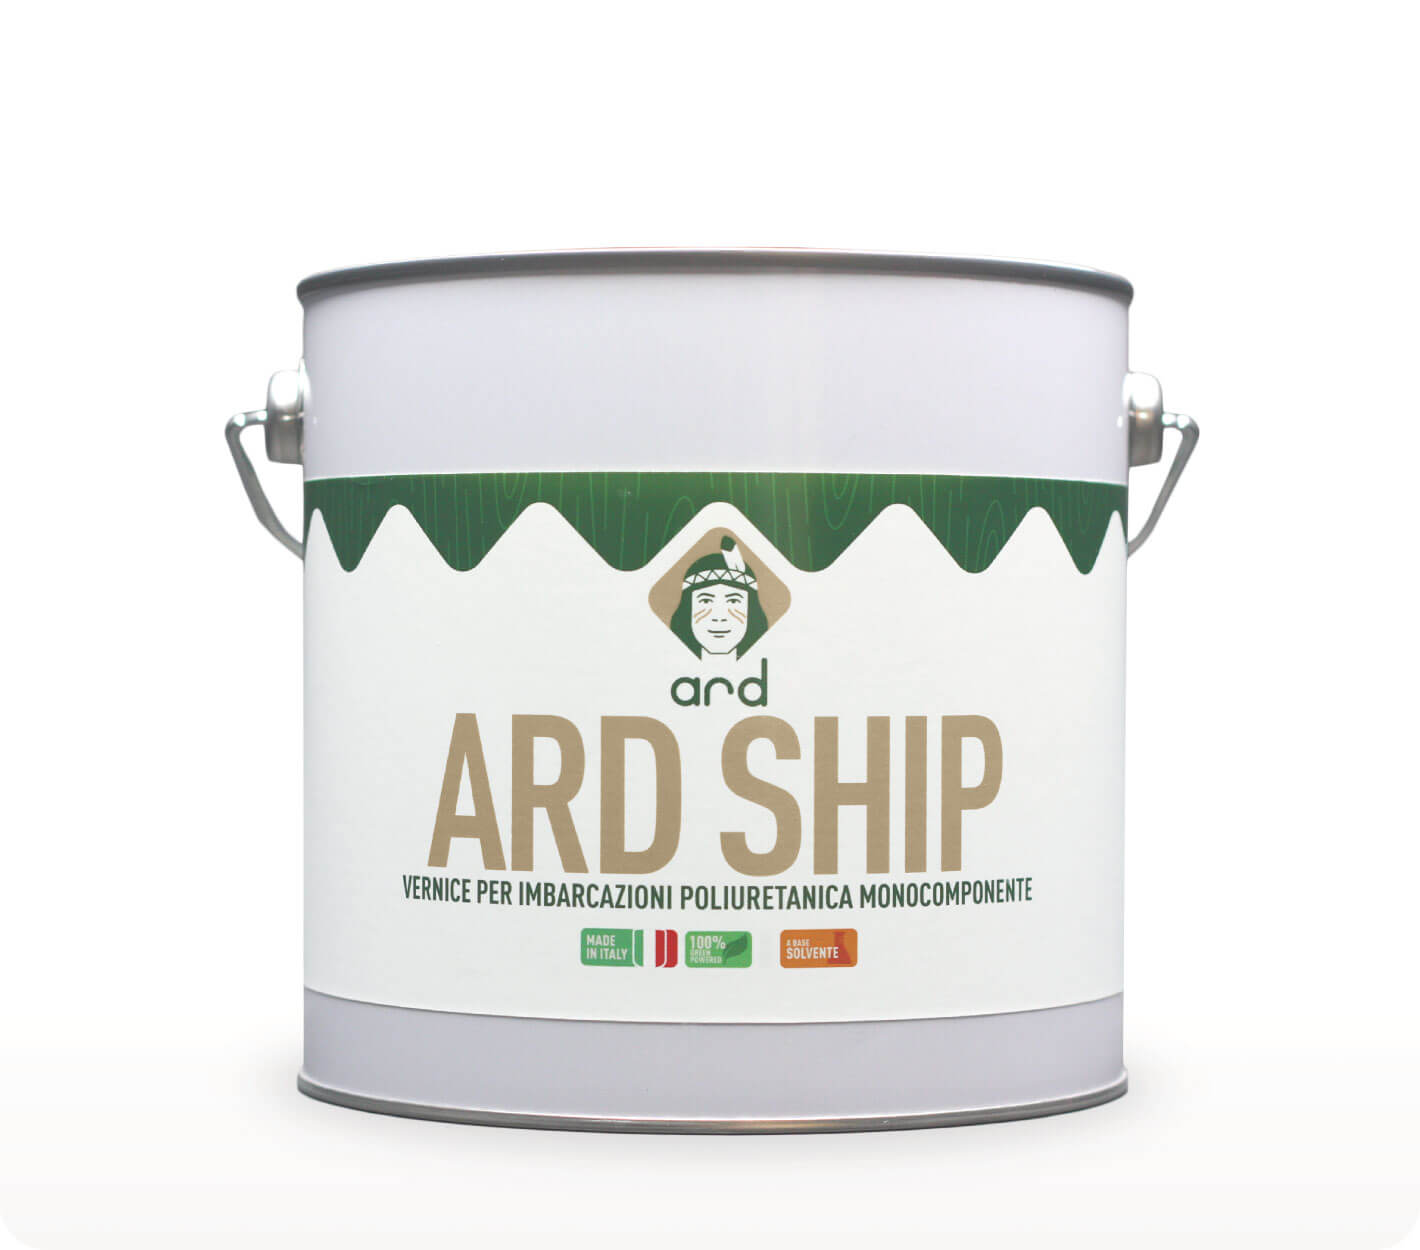 ARD Ship - vernice per imbarcazioni - Ard Raccanello